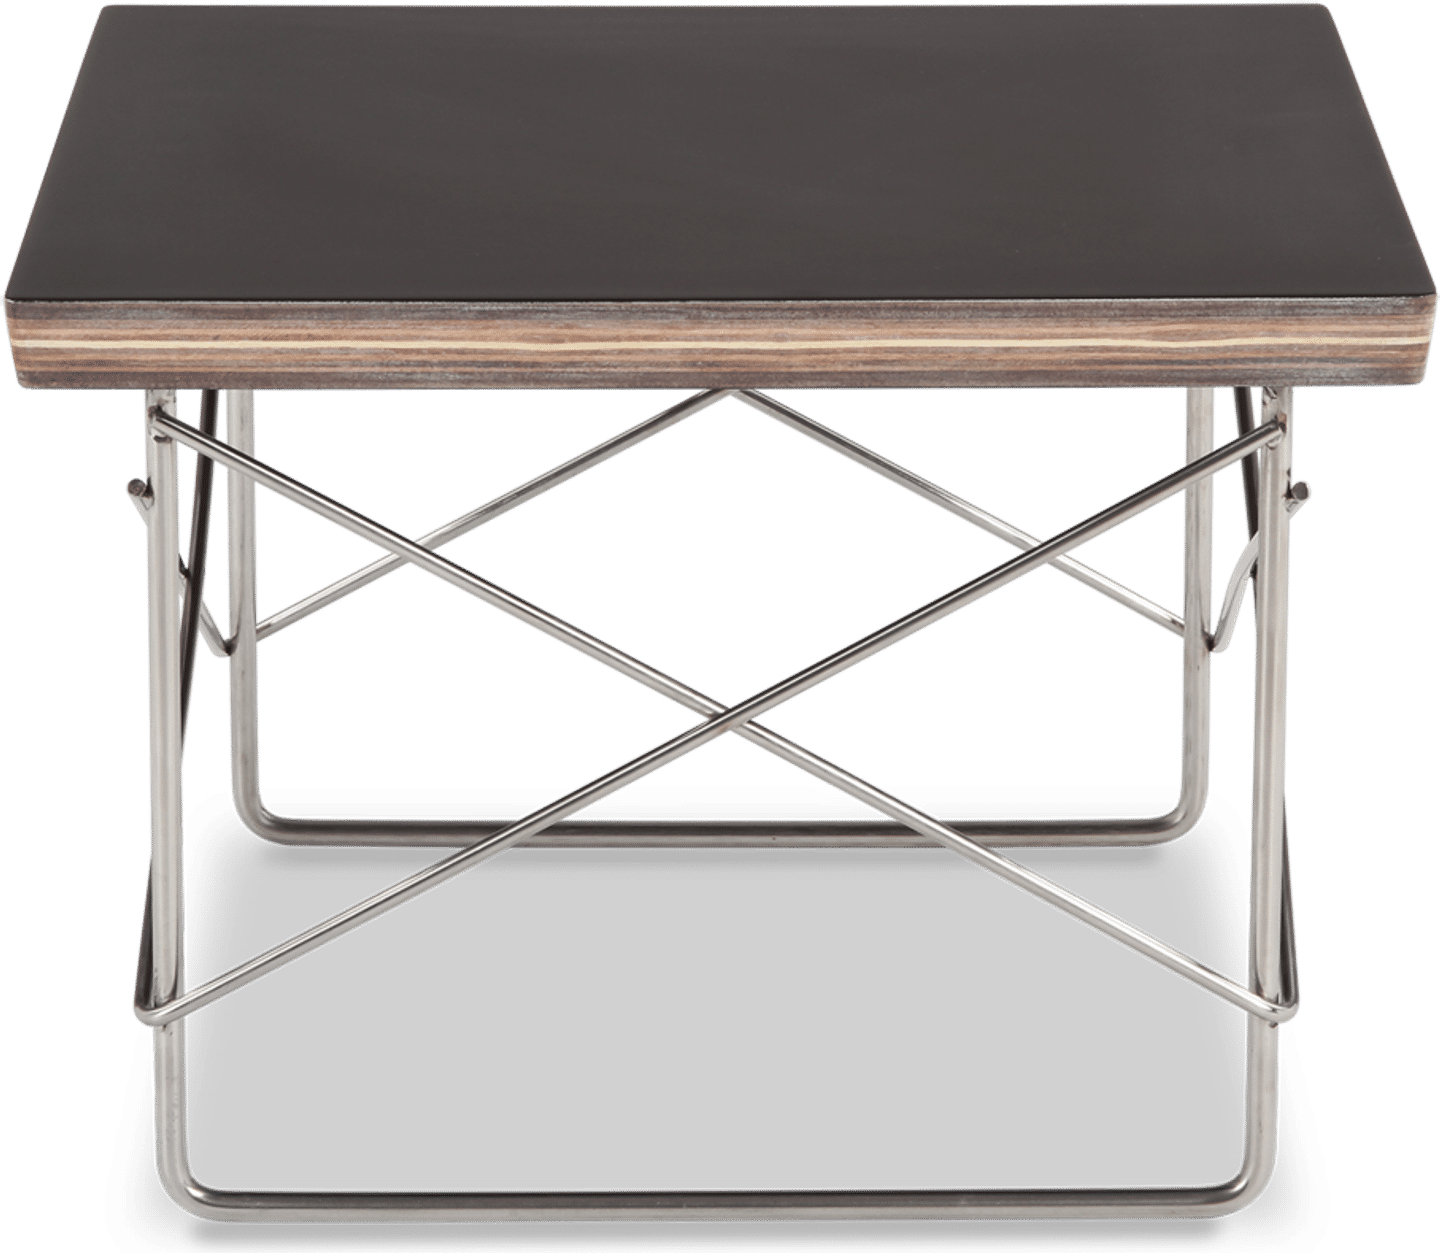 Tavolino LTR in stile Eames Black image.